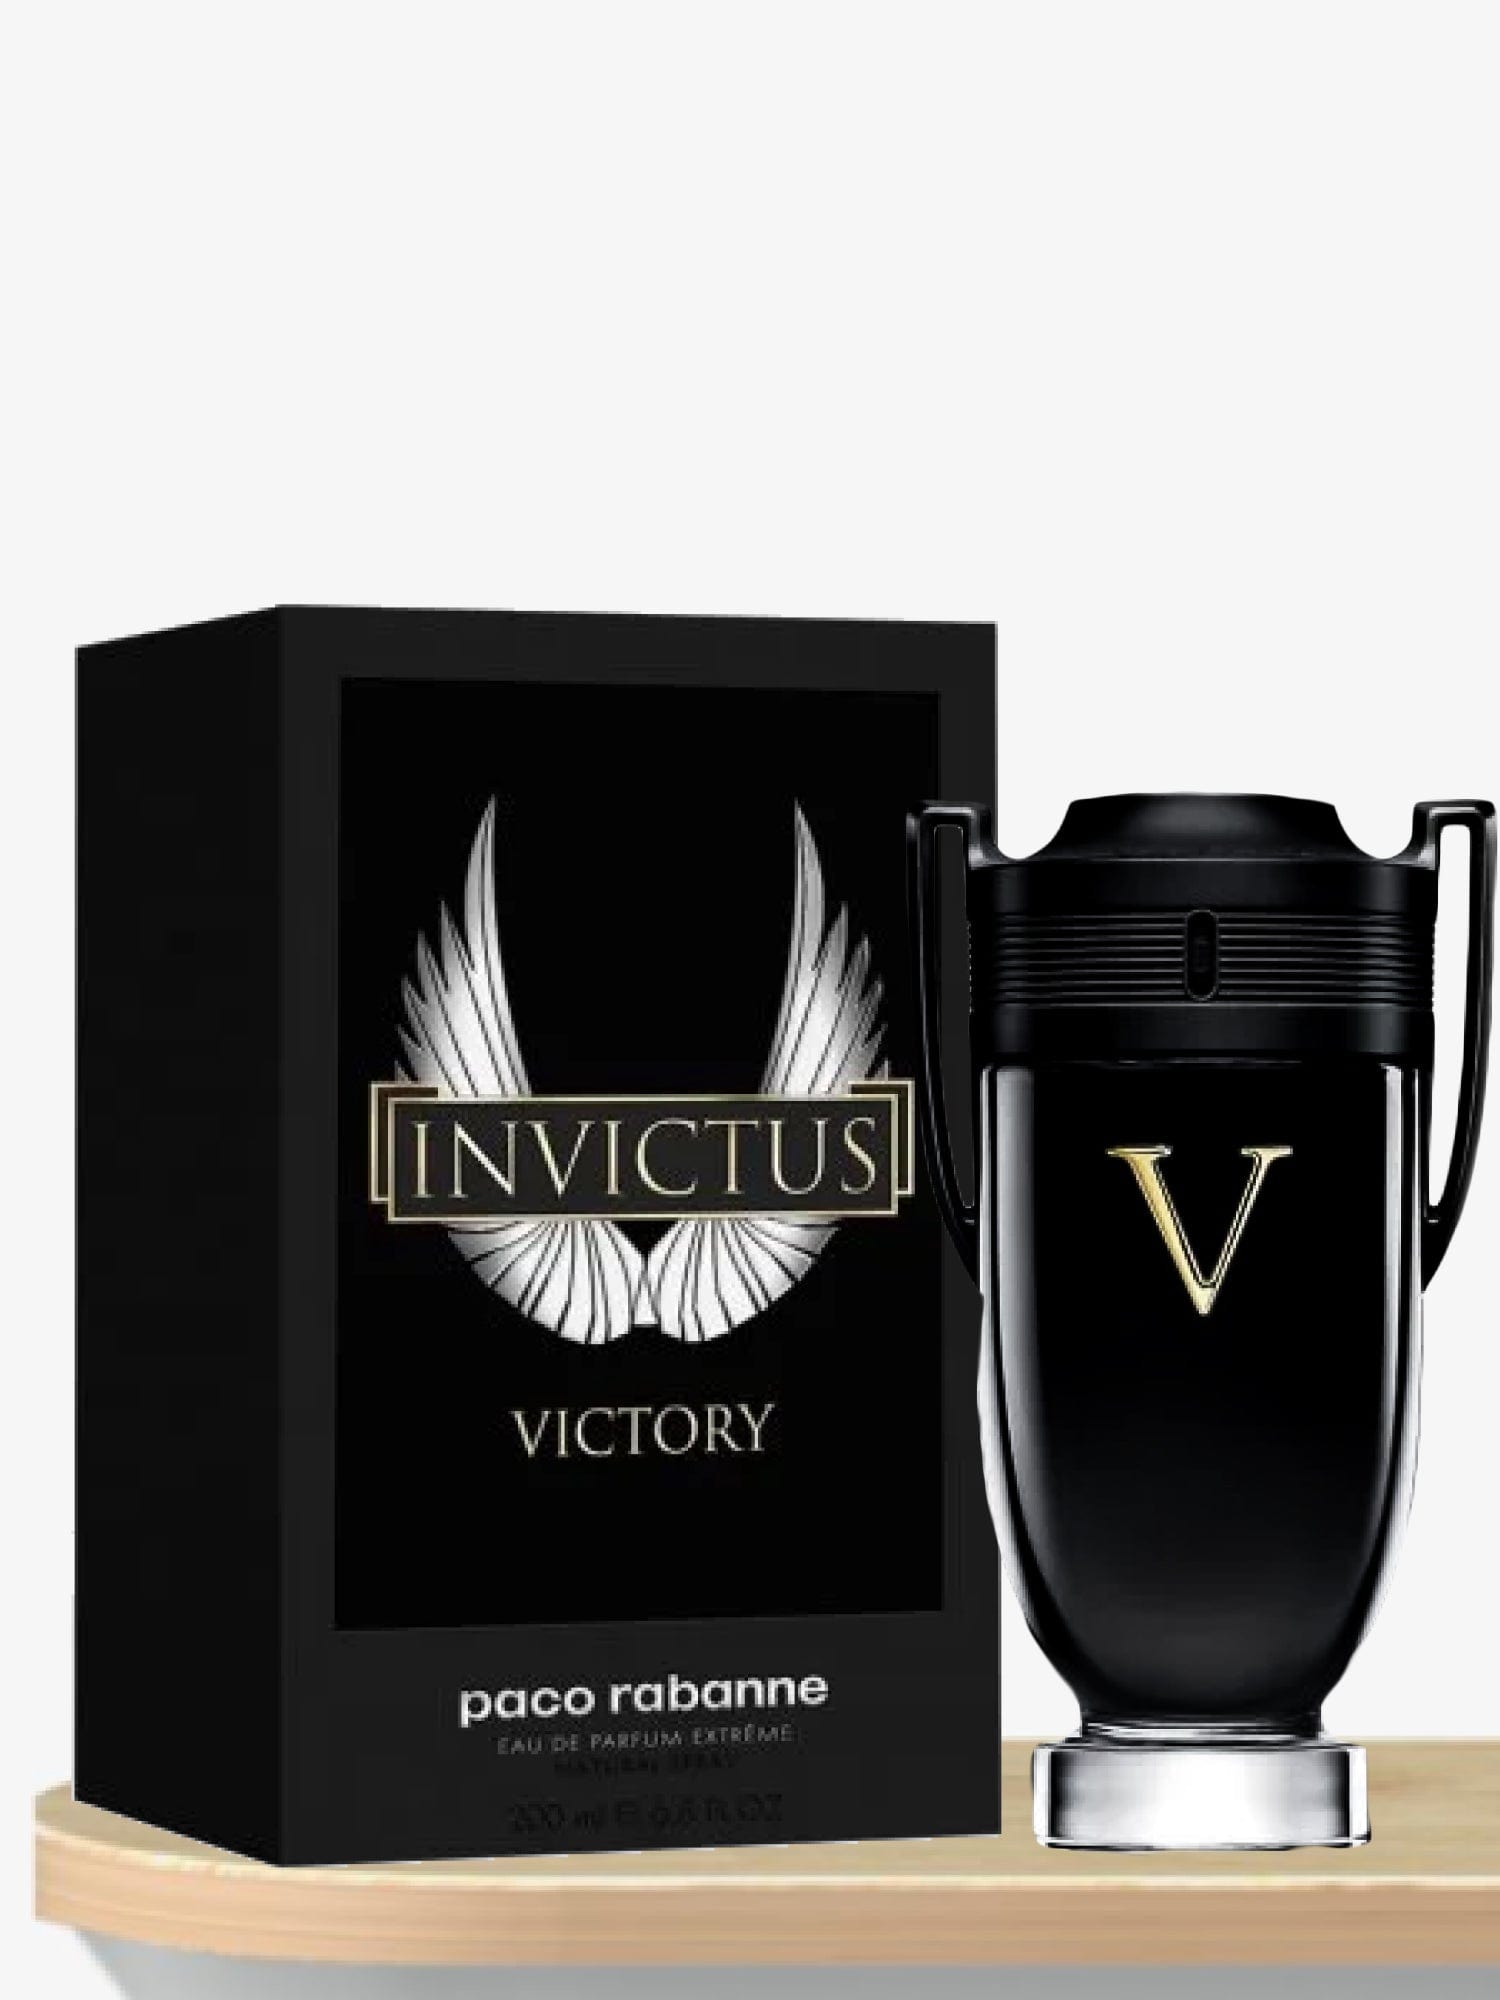 Paco Rabanne Invictus Victory Extreme Eau de Parfum 100 mL / Male